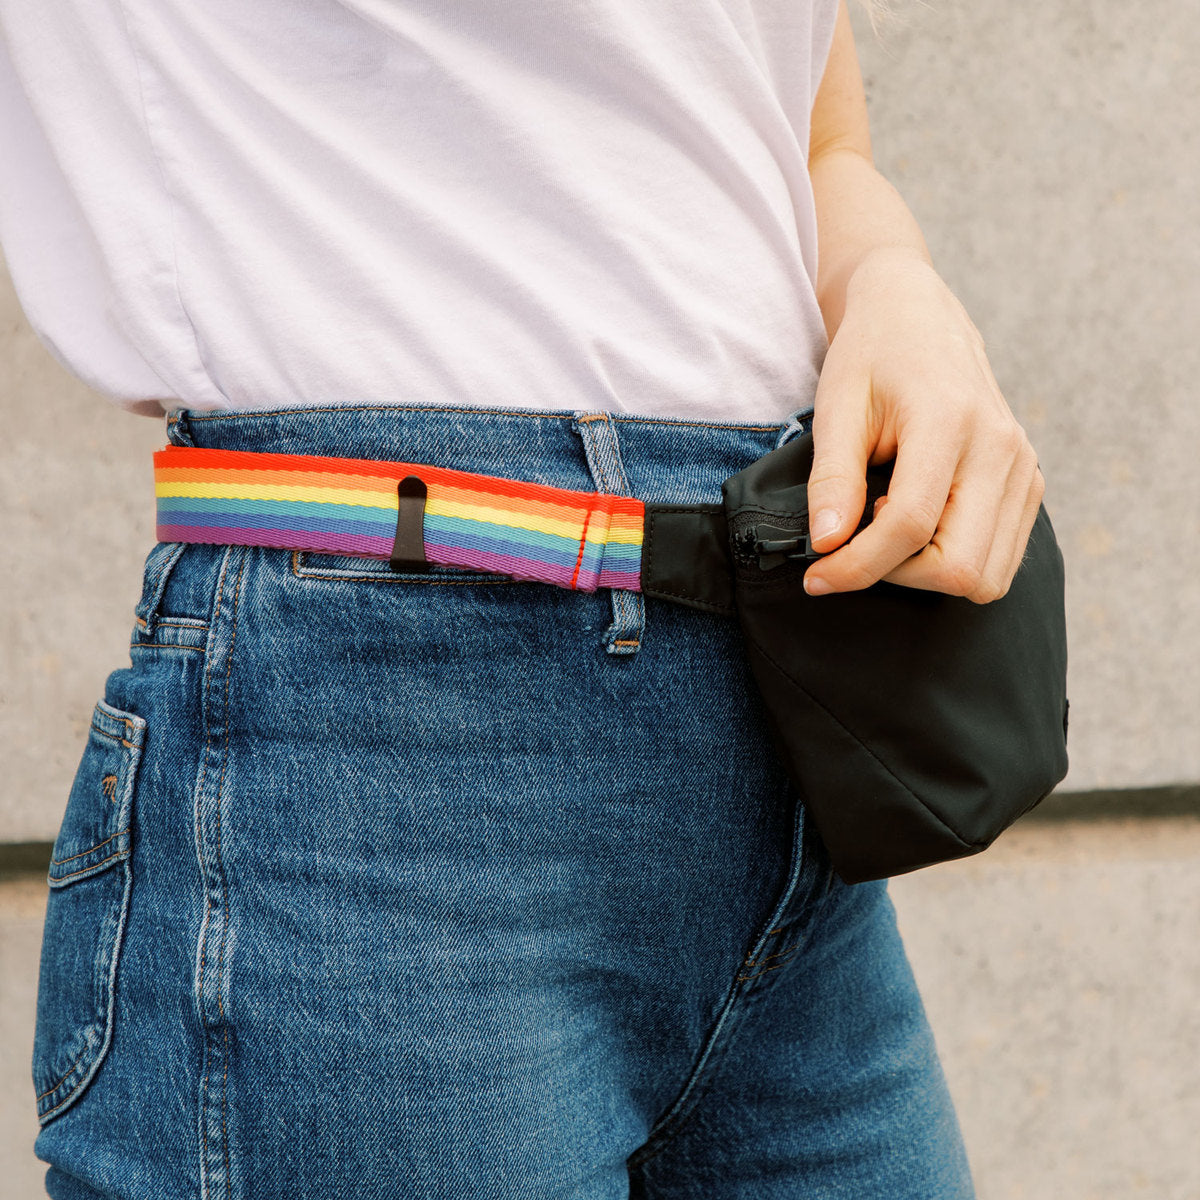 20 Styles Love Is Love LGBT Pride Tote Bag